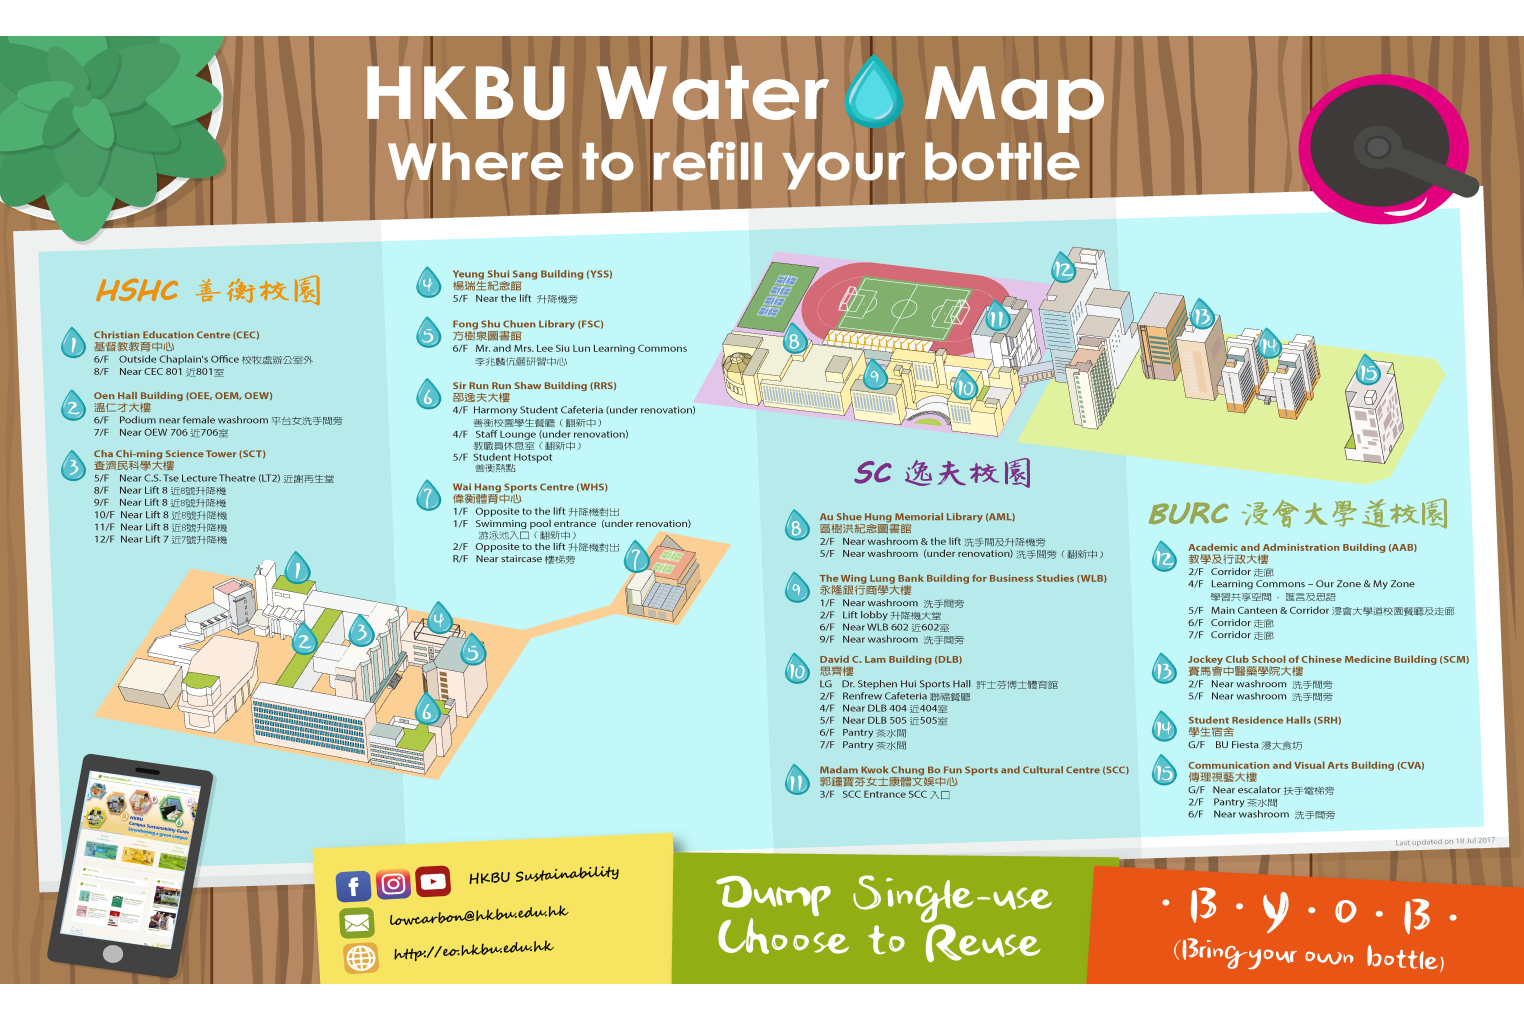 HKBU Water Map